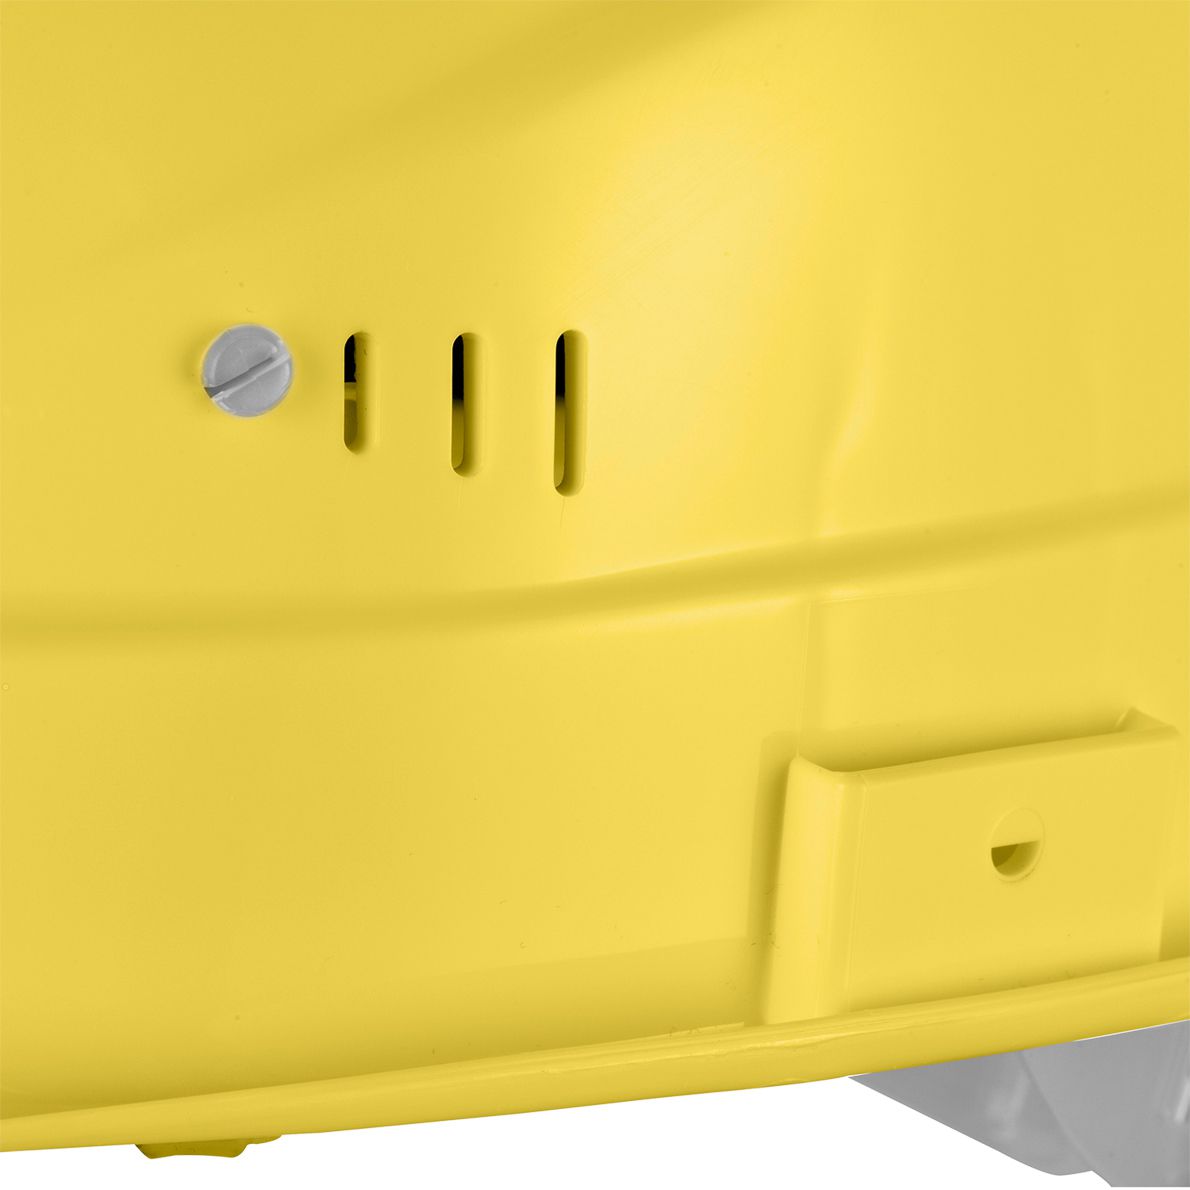 uvex super boss Bauhelm - Robuster Schutzhelm für Bau & Industrie - EN 397 - mit einstellbarer Belüftung - Gelb